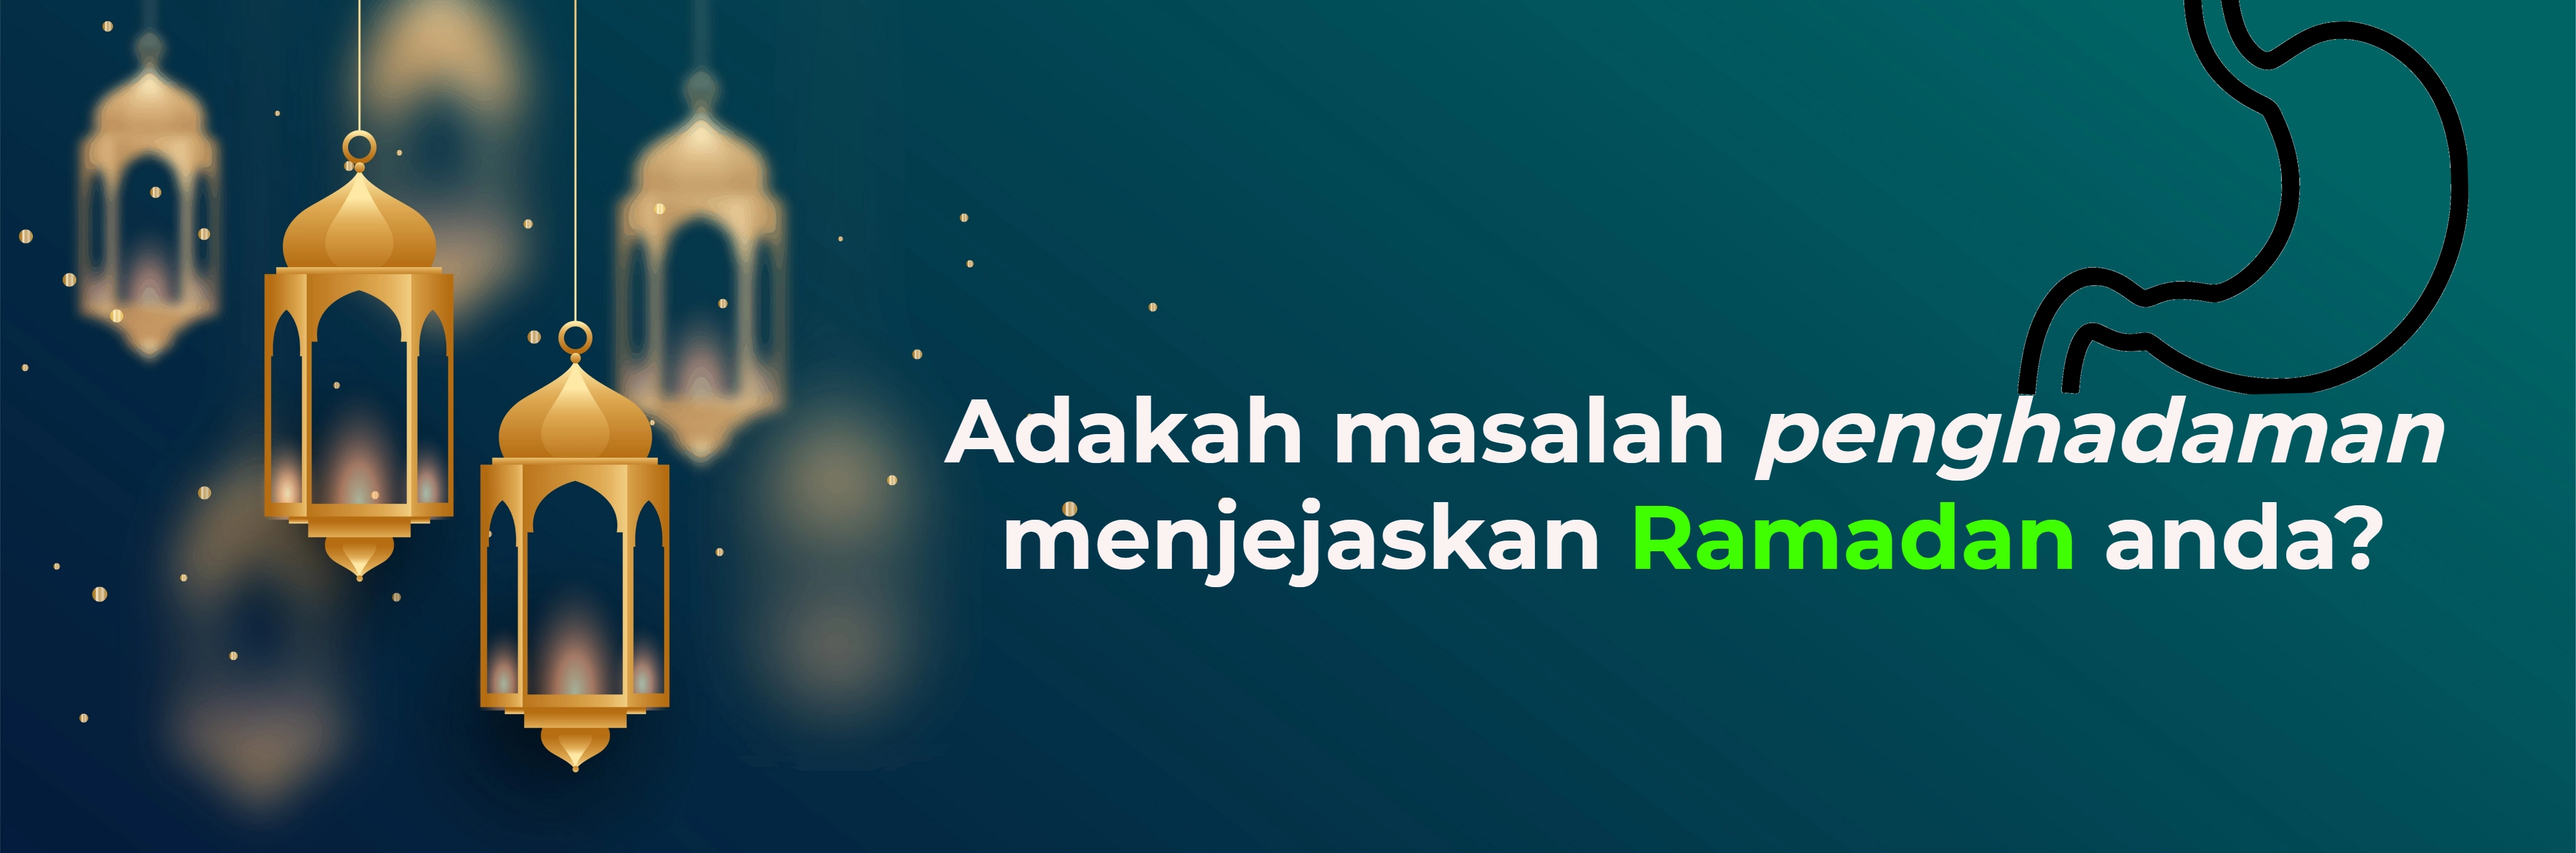 3067-ramadan-1.jpg